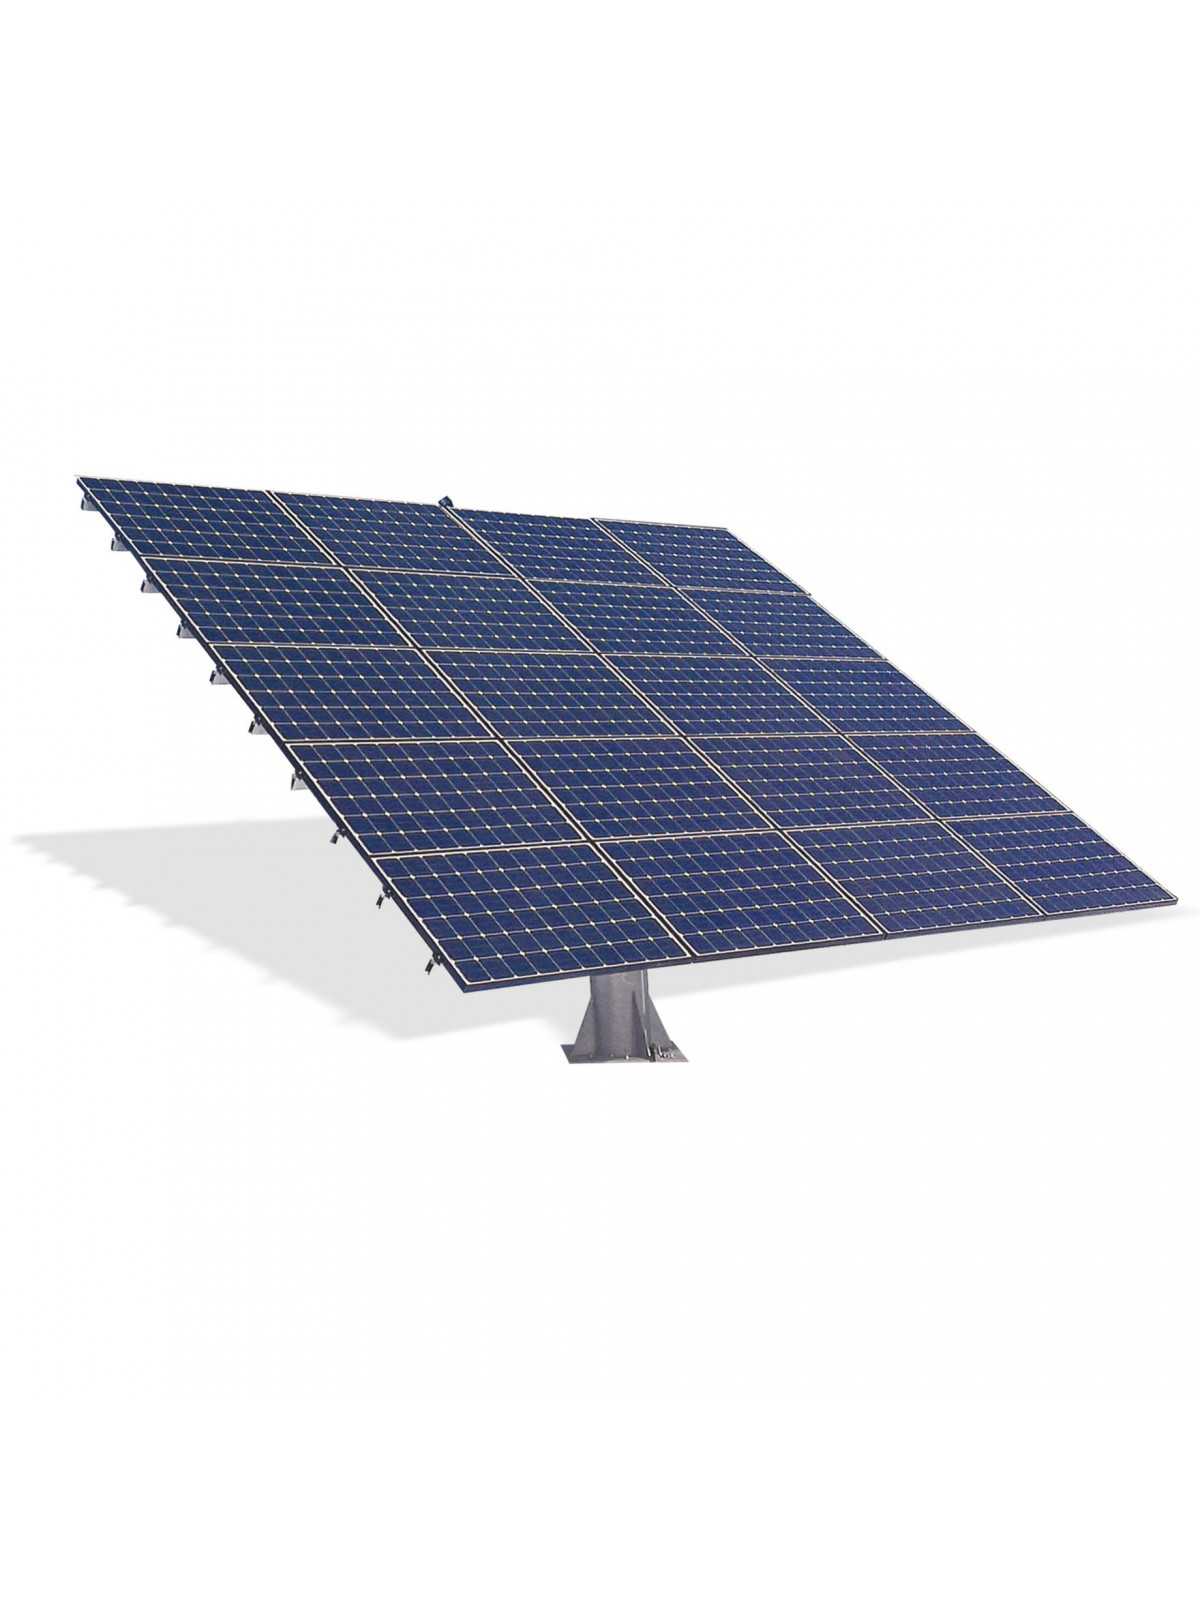 Suiveur Photovoltaïque 2 axes: 36 panneaux